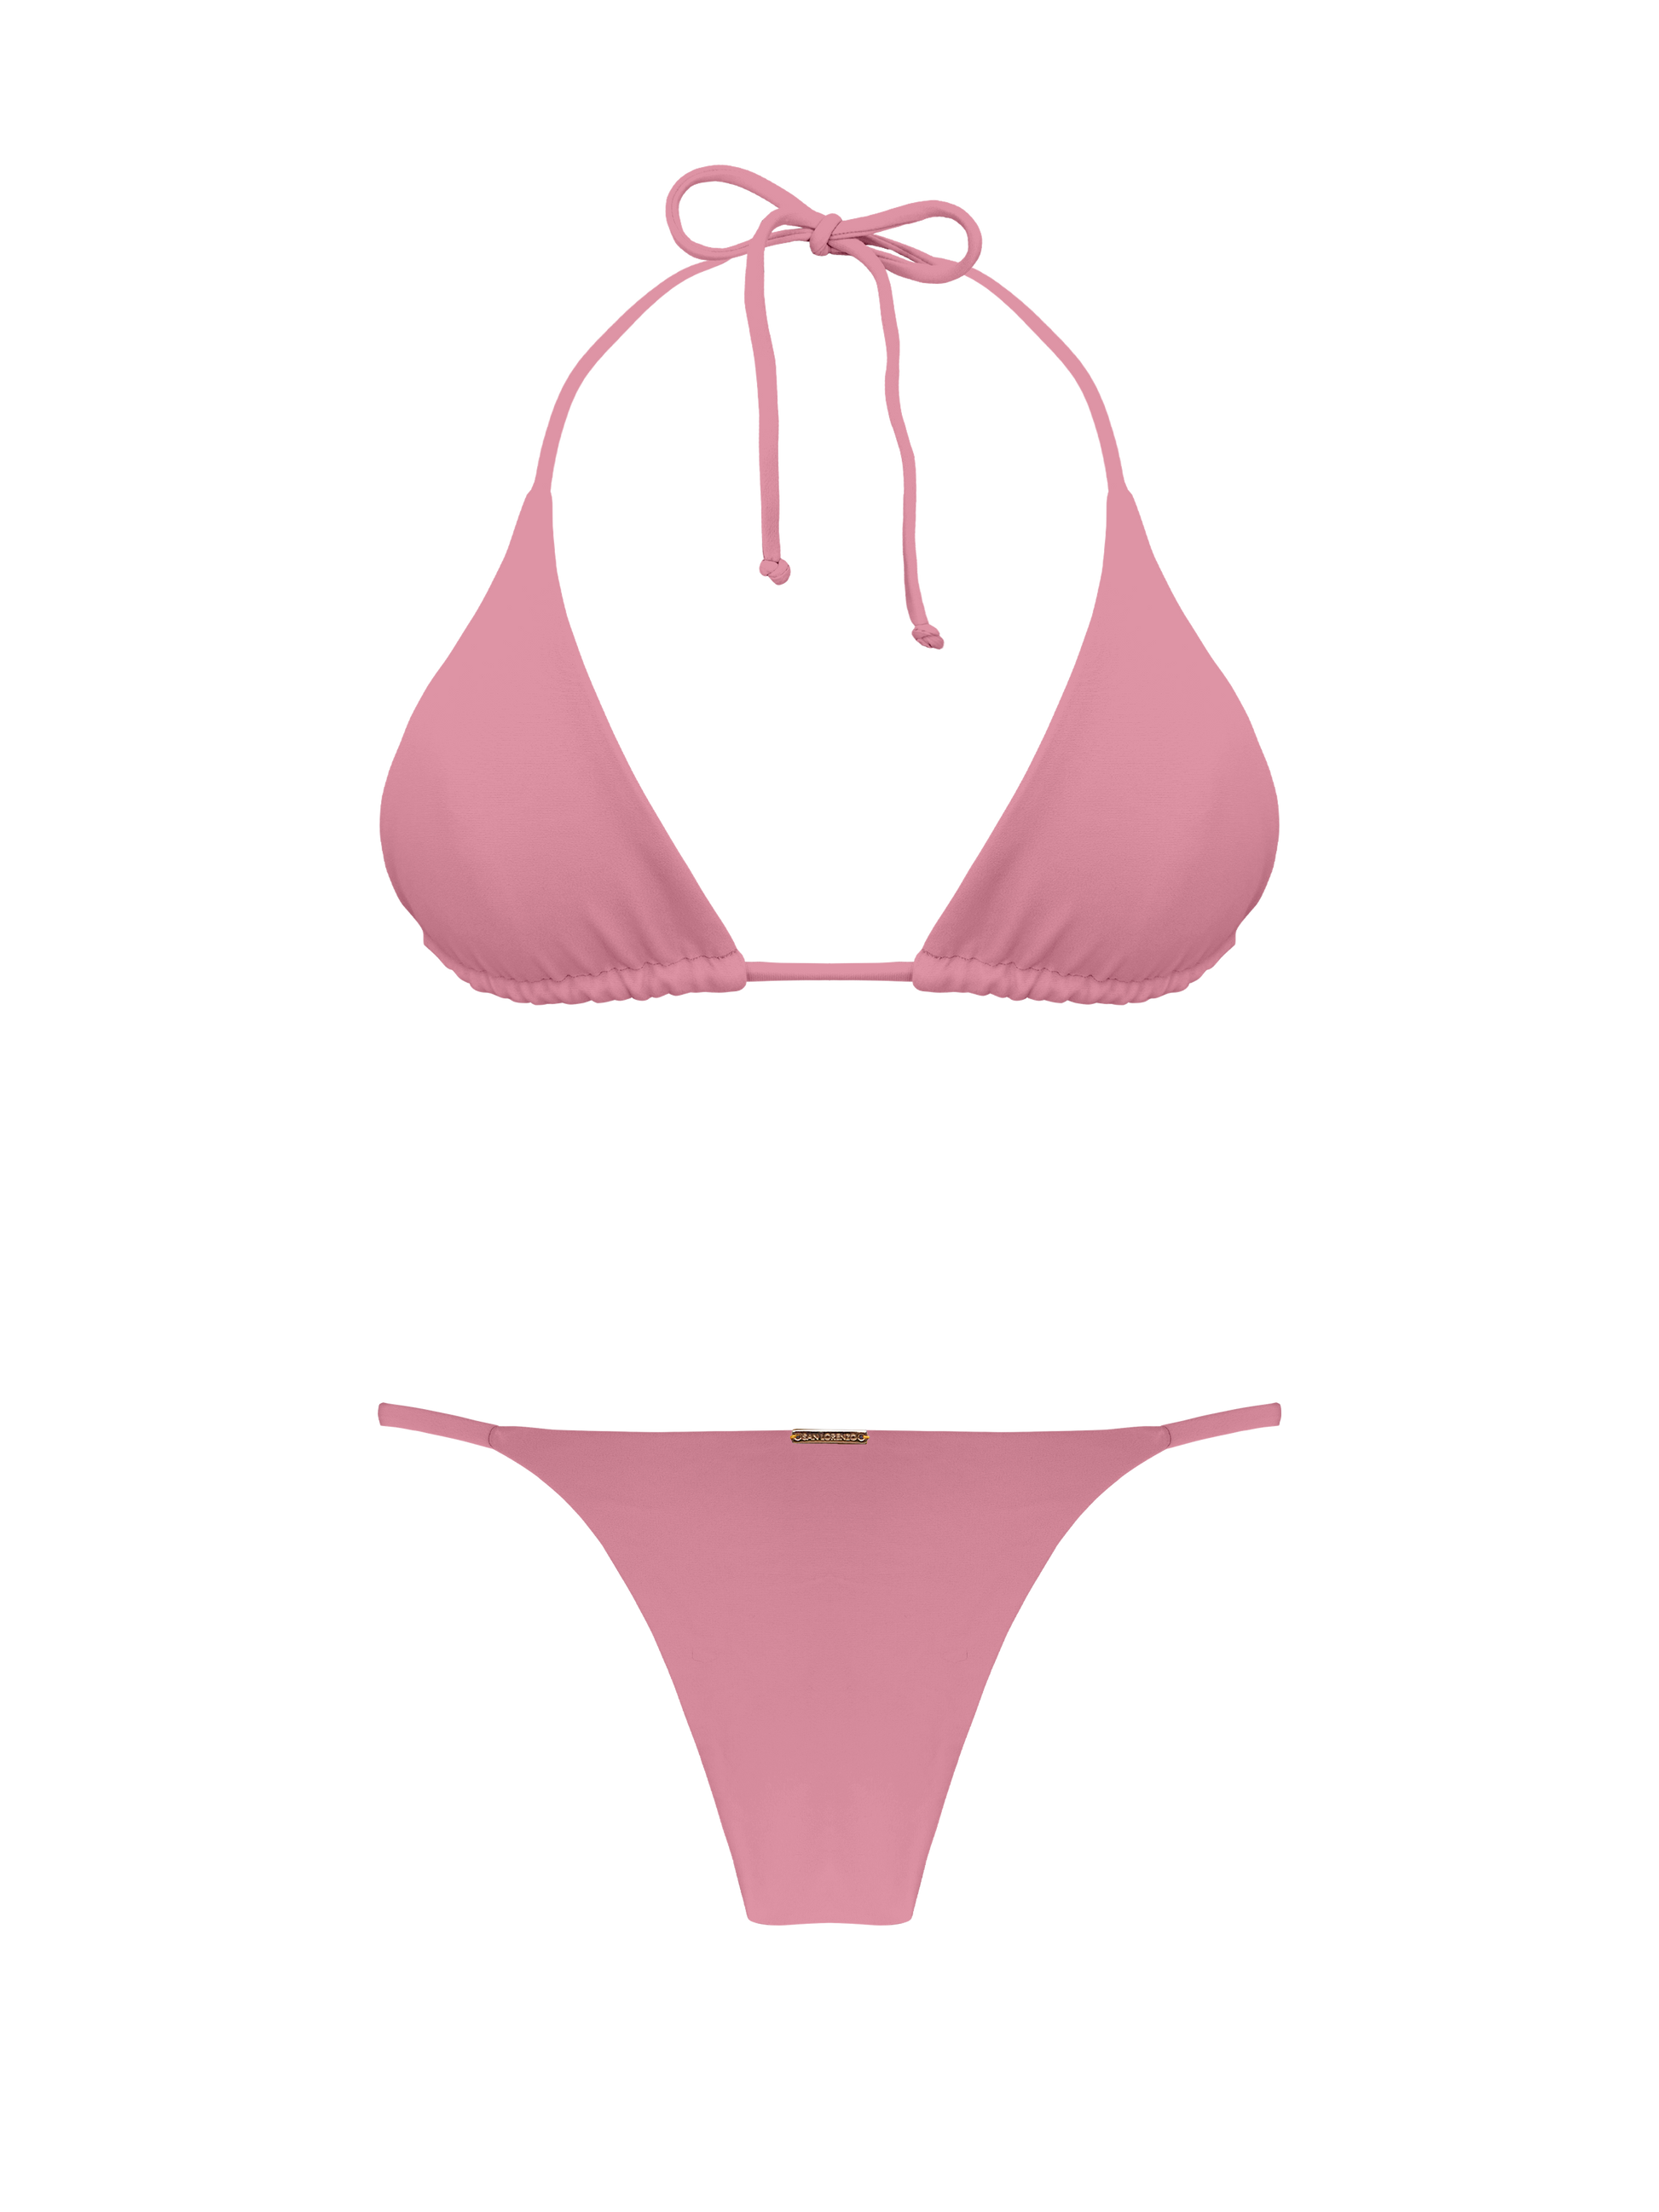 Classic Triangle Bikini Top Top Pink X-Small Coral Colletion By San Lorenzo  – San Lorenzo Bikinis